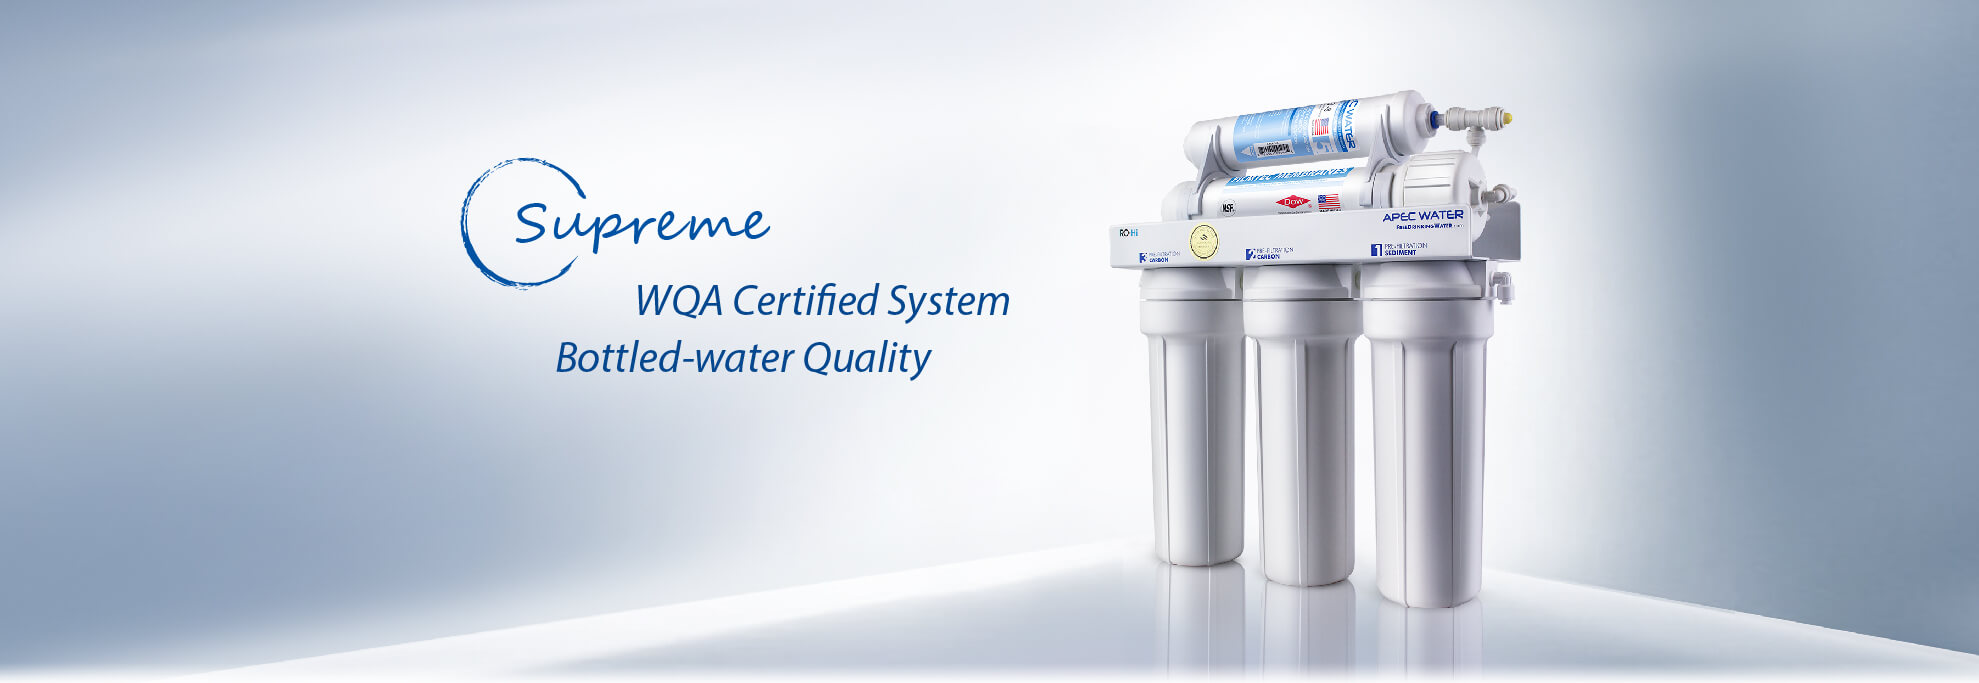 WQA认证的瓶装水质量体系